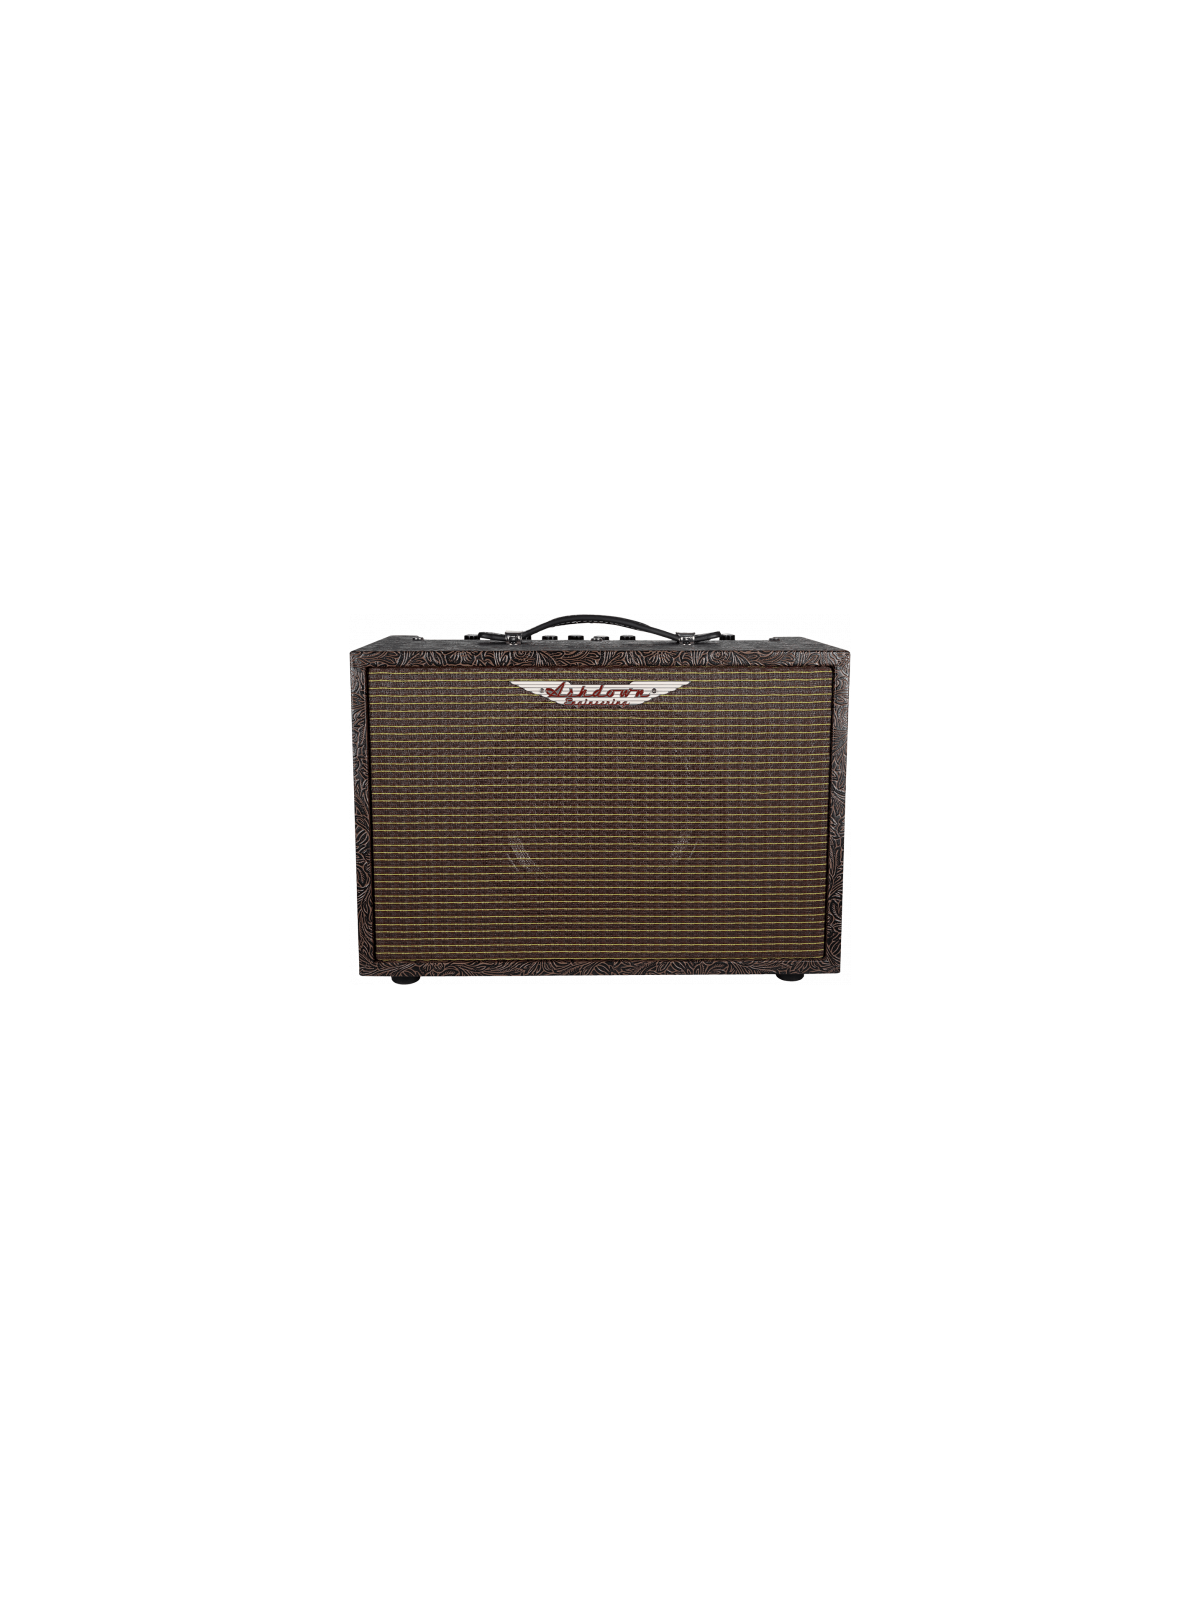 Combo Guitare Acoustique
ASHDOWN - WOODSMAN-CLASSIC
40 watts